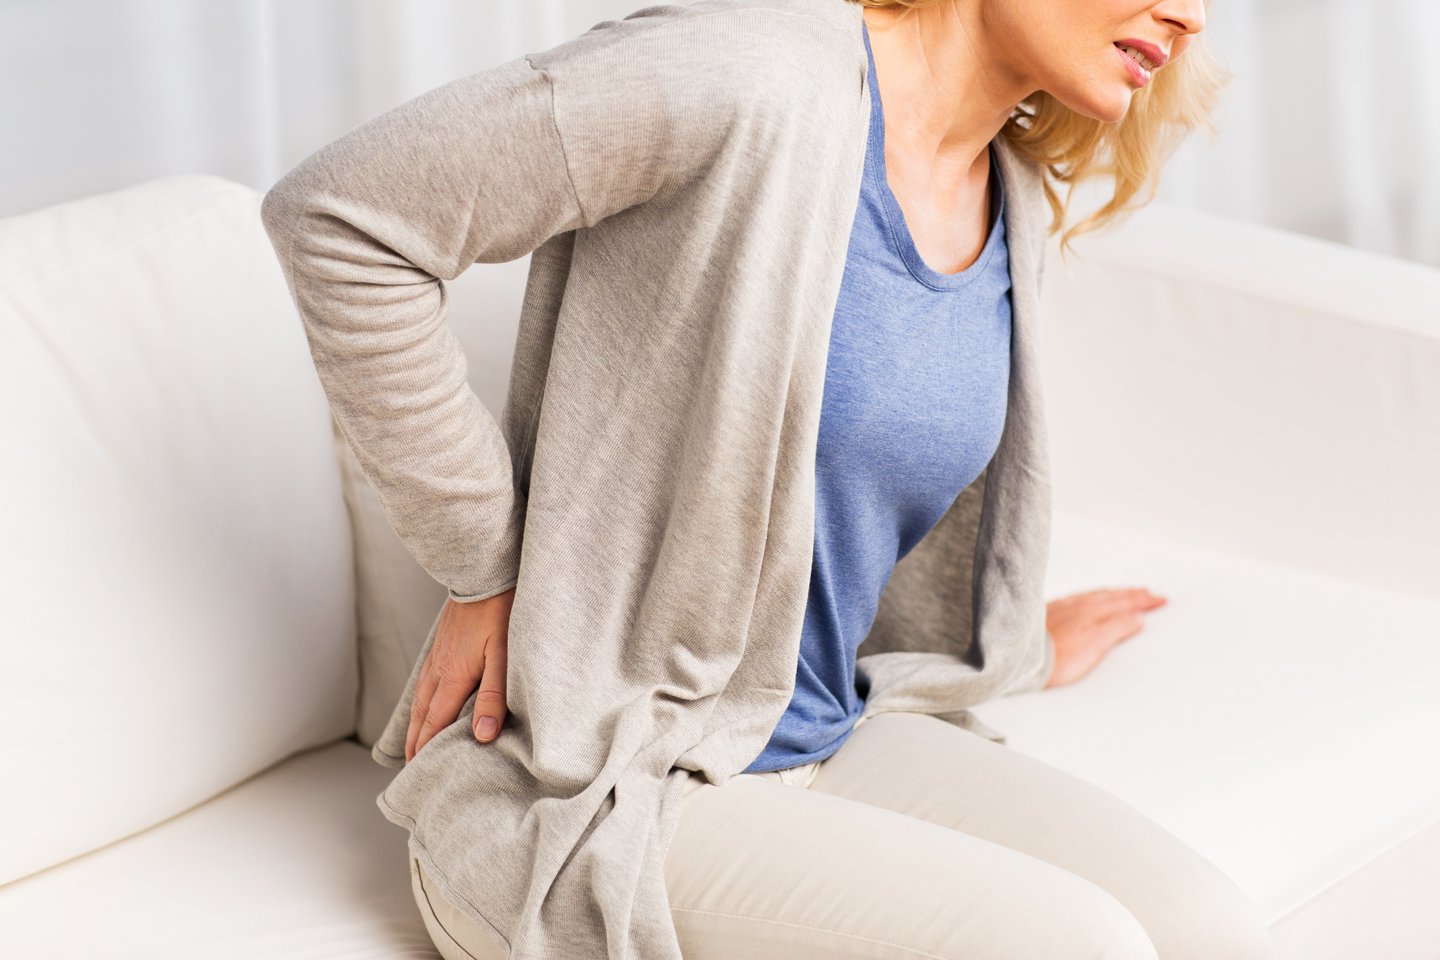 Amerikos chiropraktikų asociacijos duomenimis, pusė darbingo amžiaus amerikiečių teigia patiriantys nugaros skausmus.<br>123rf nuotr.